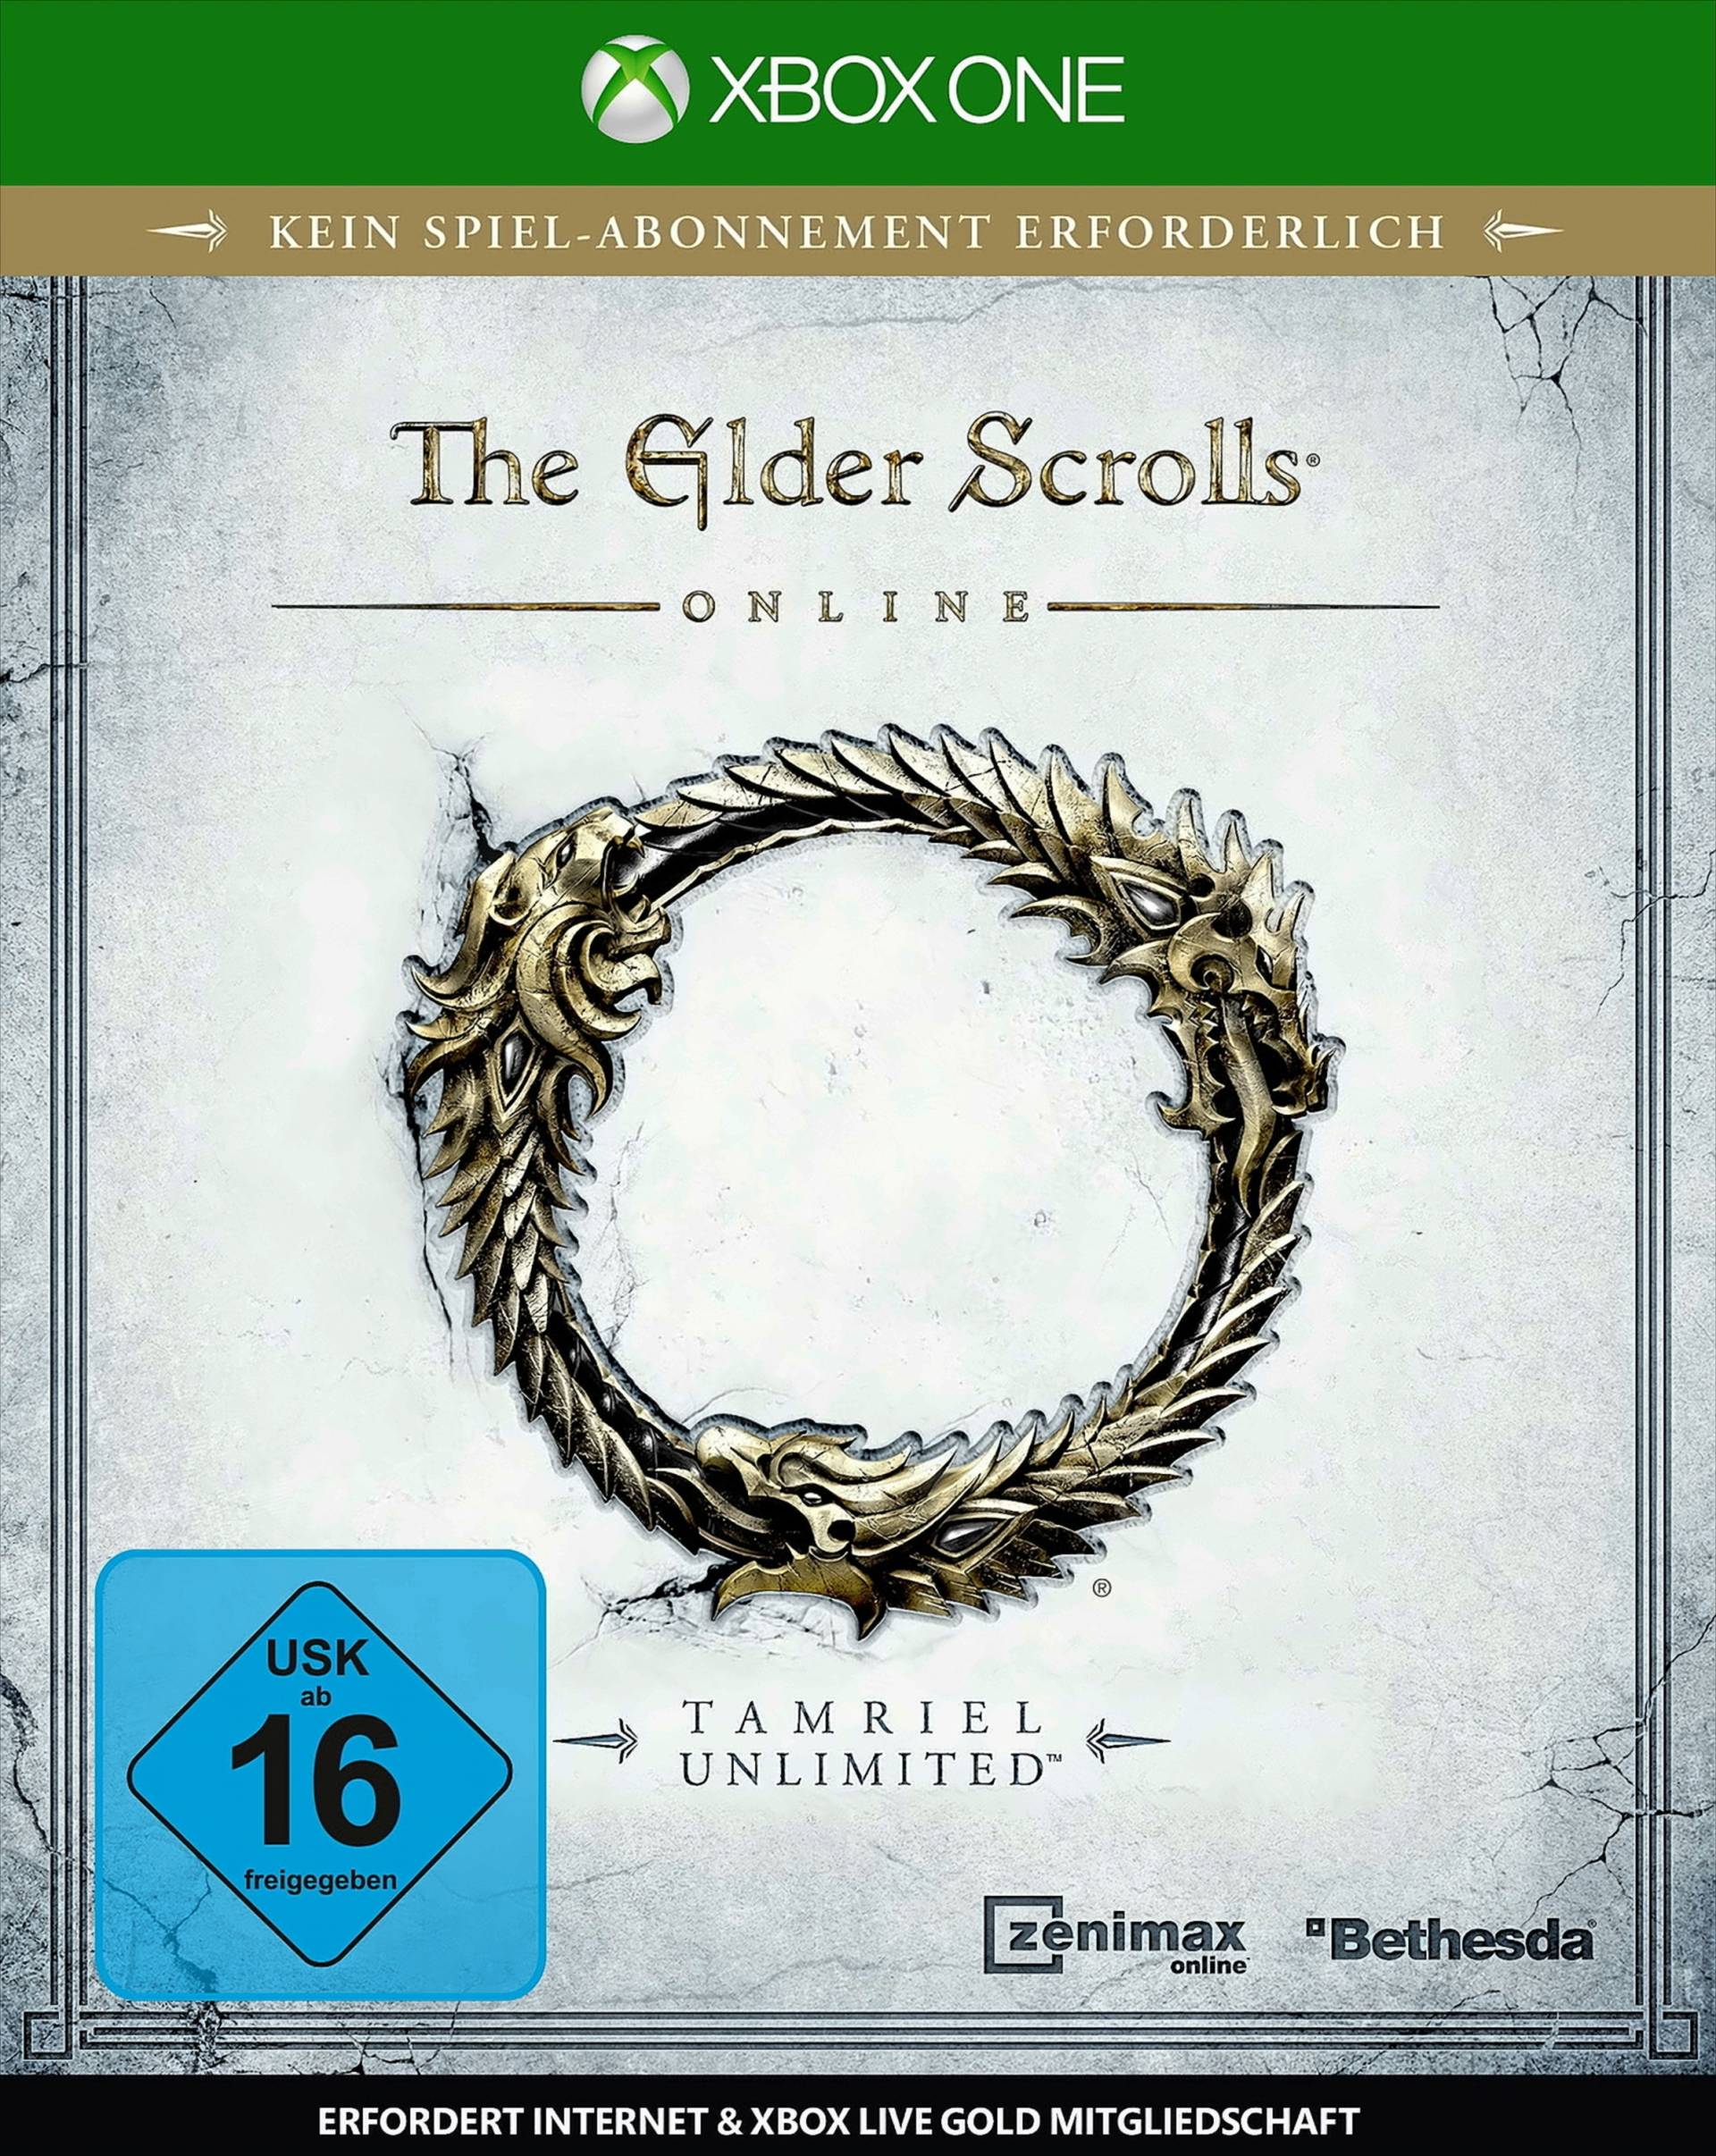 The Elder Scrolls Online: Tamriel Unlimited von Bethesda Softworks (ZeniMax)